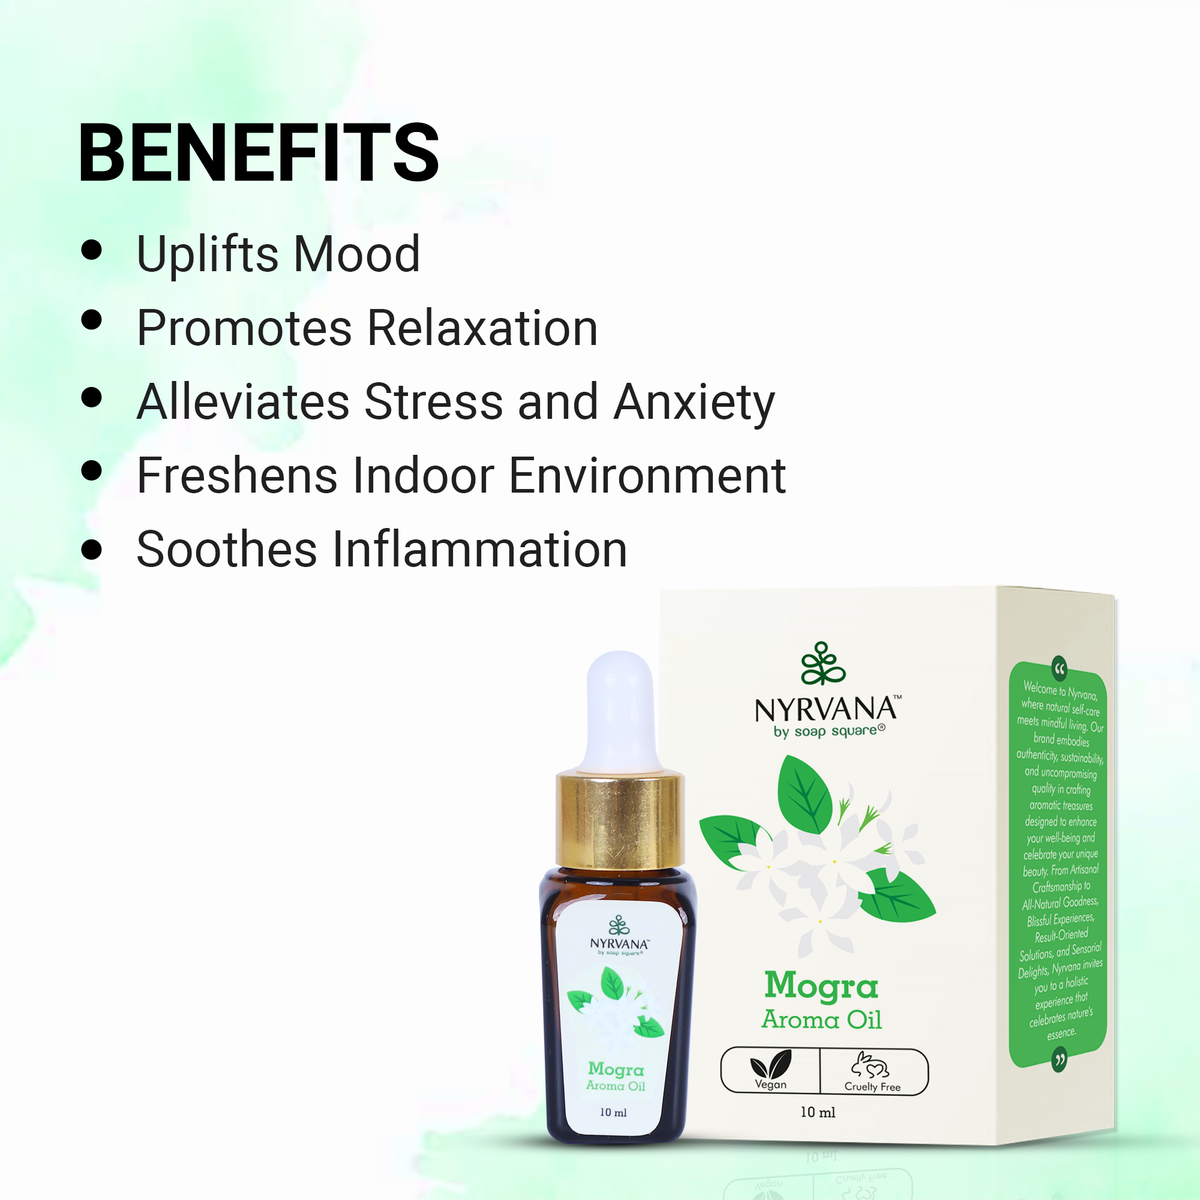 Mogra Aroma Oil